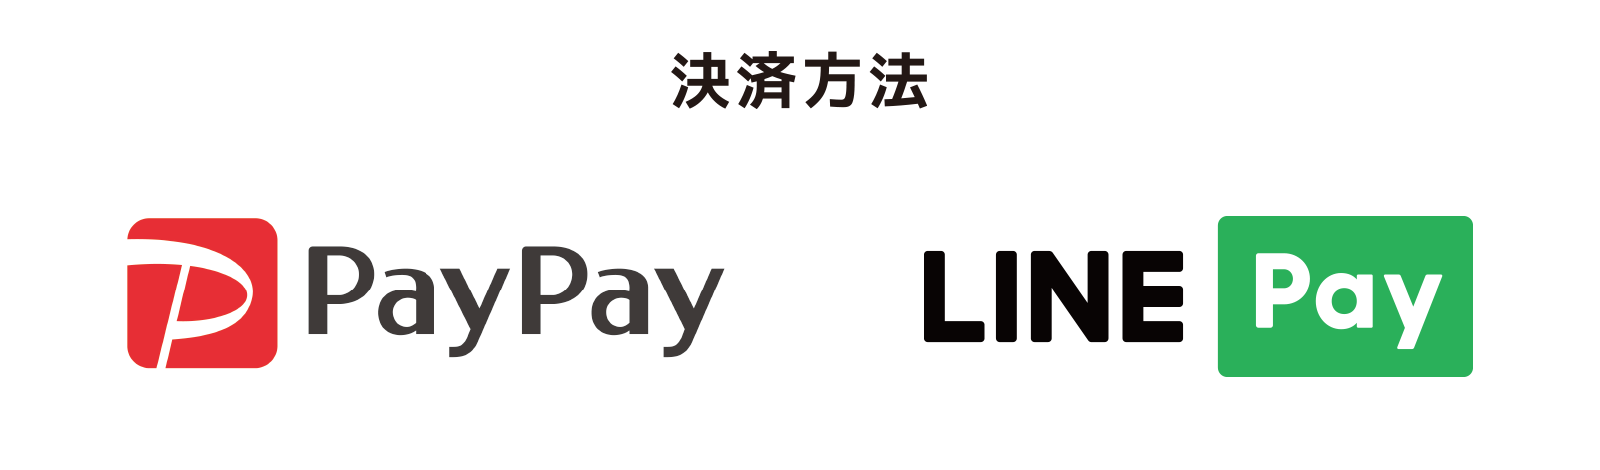 決済方法、LINE Pay、PayPay